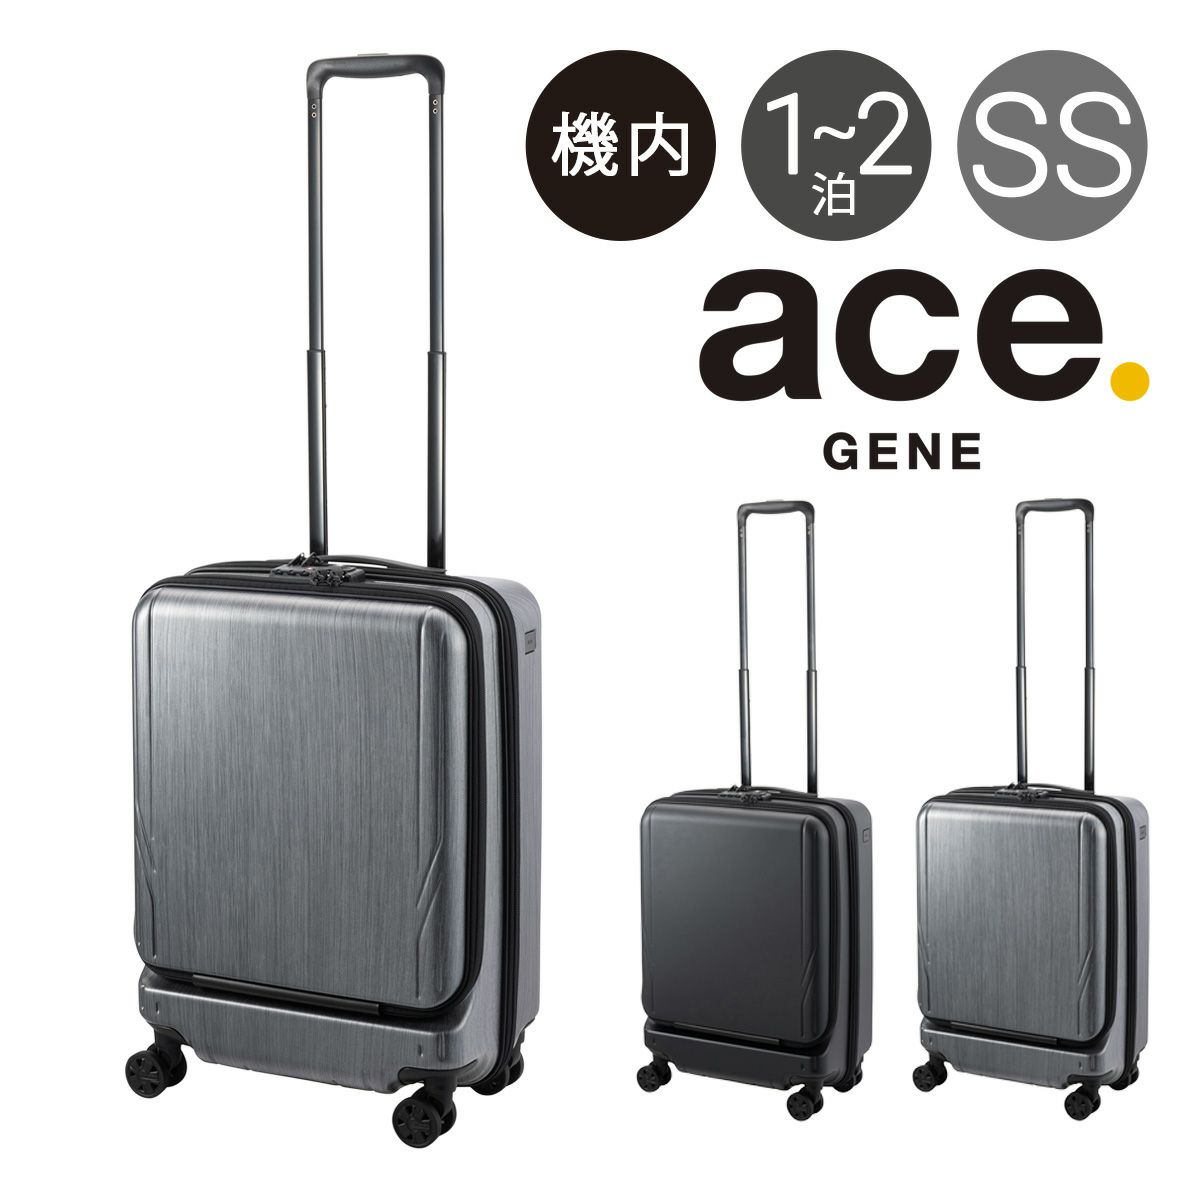 プラスワン スーツケース 3015-46 46cm 【 PLUSONE LUGGAGE キャリー